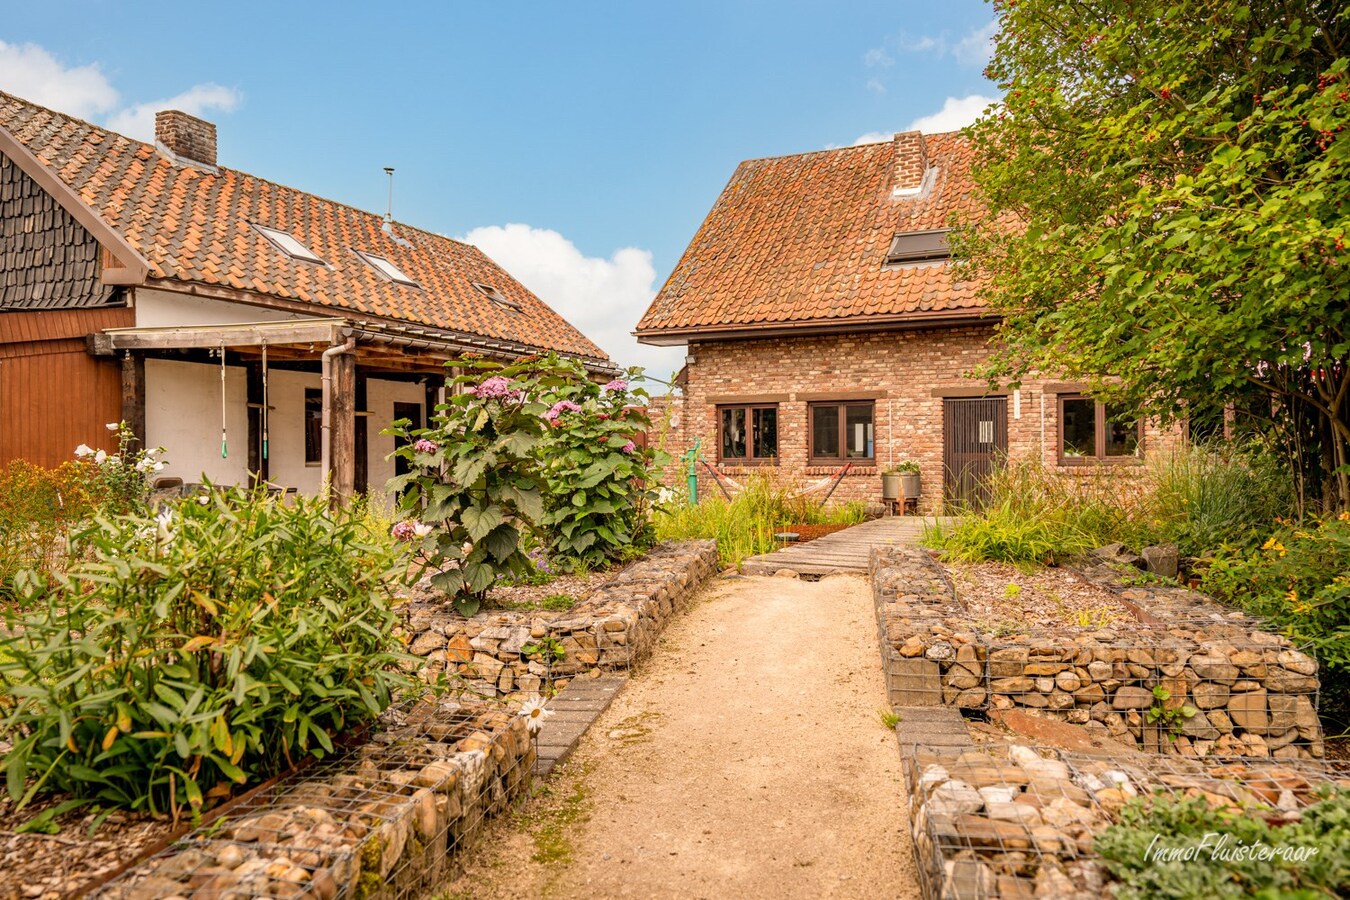 Property sold in Kortessem